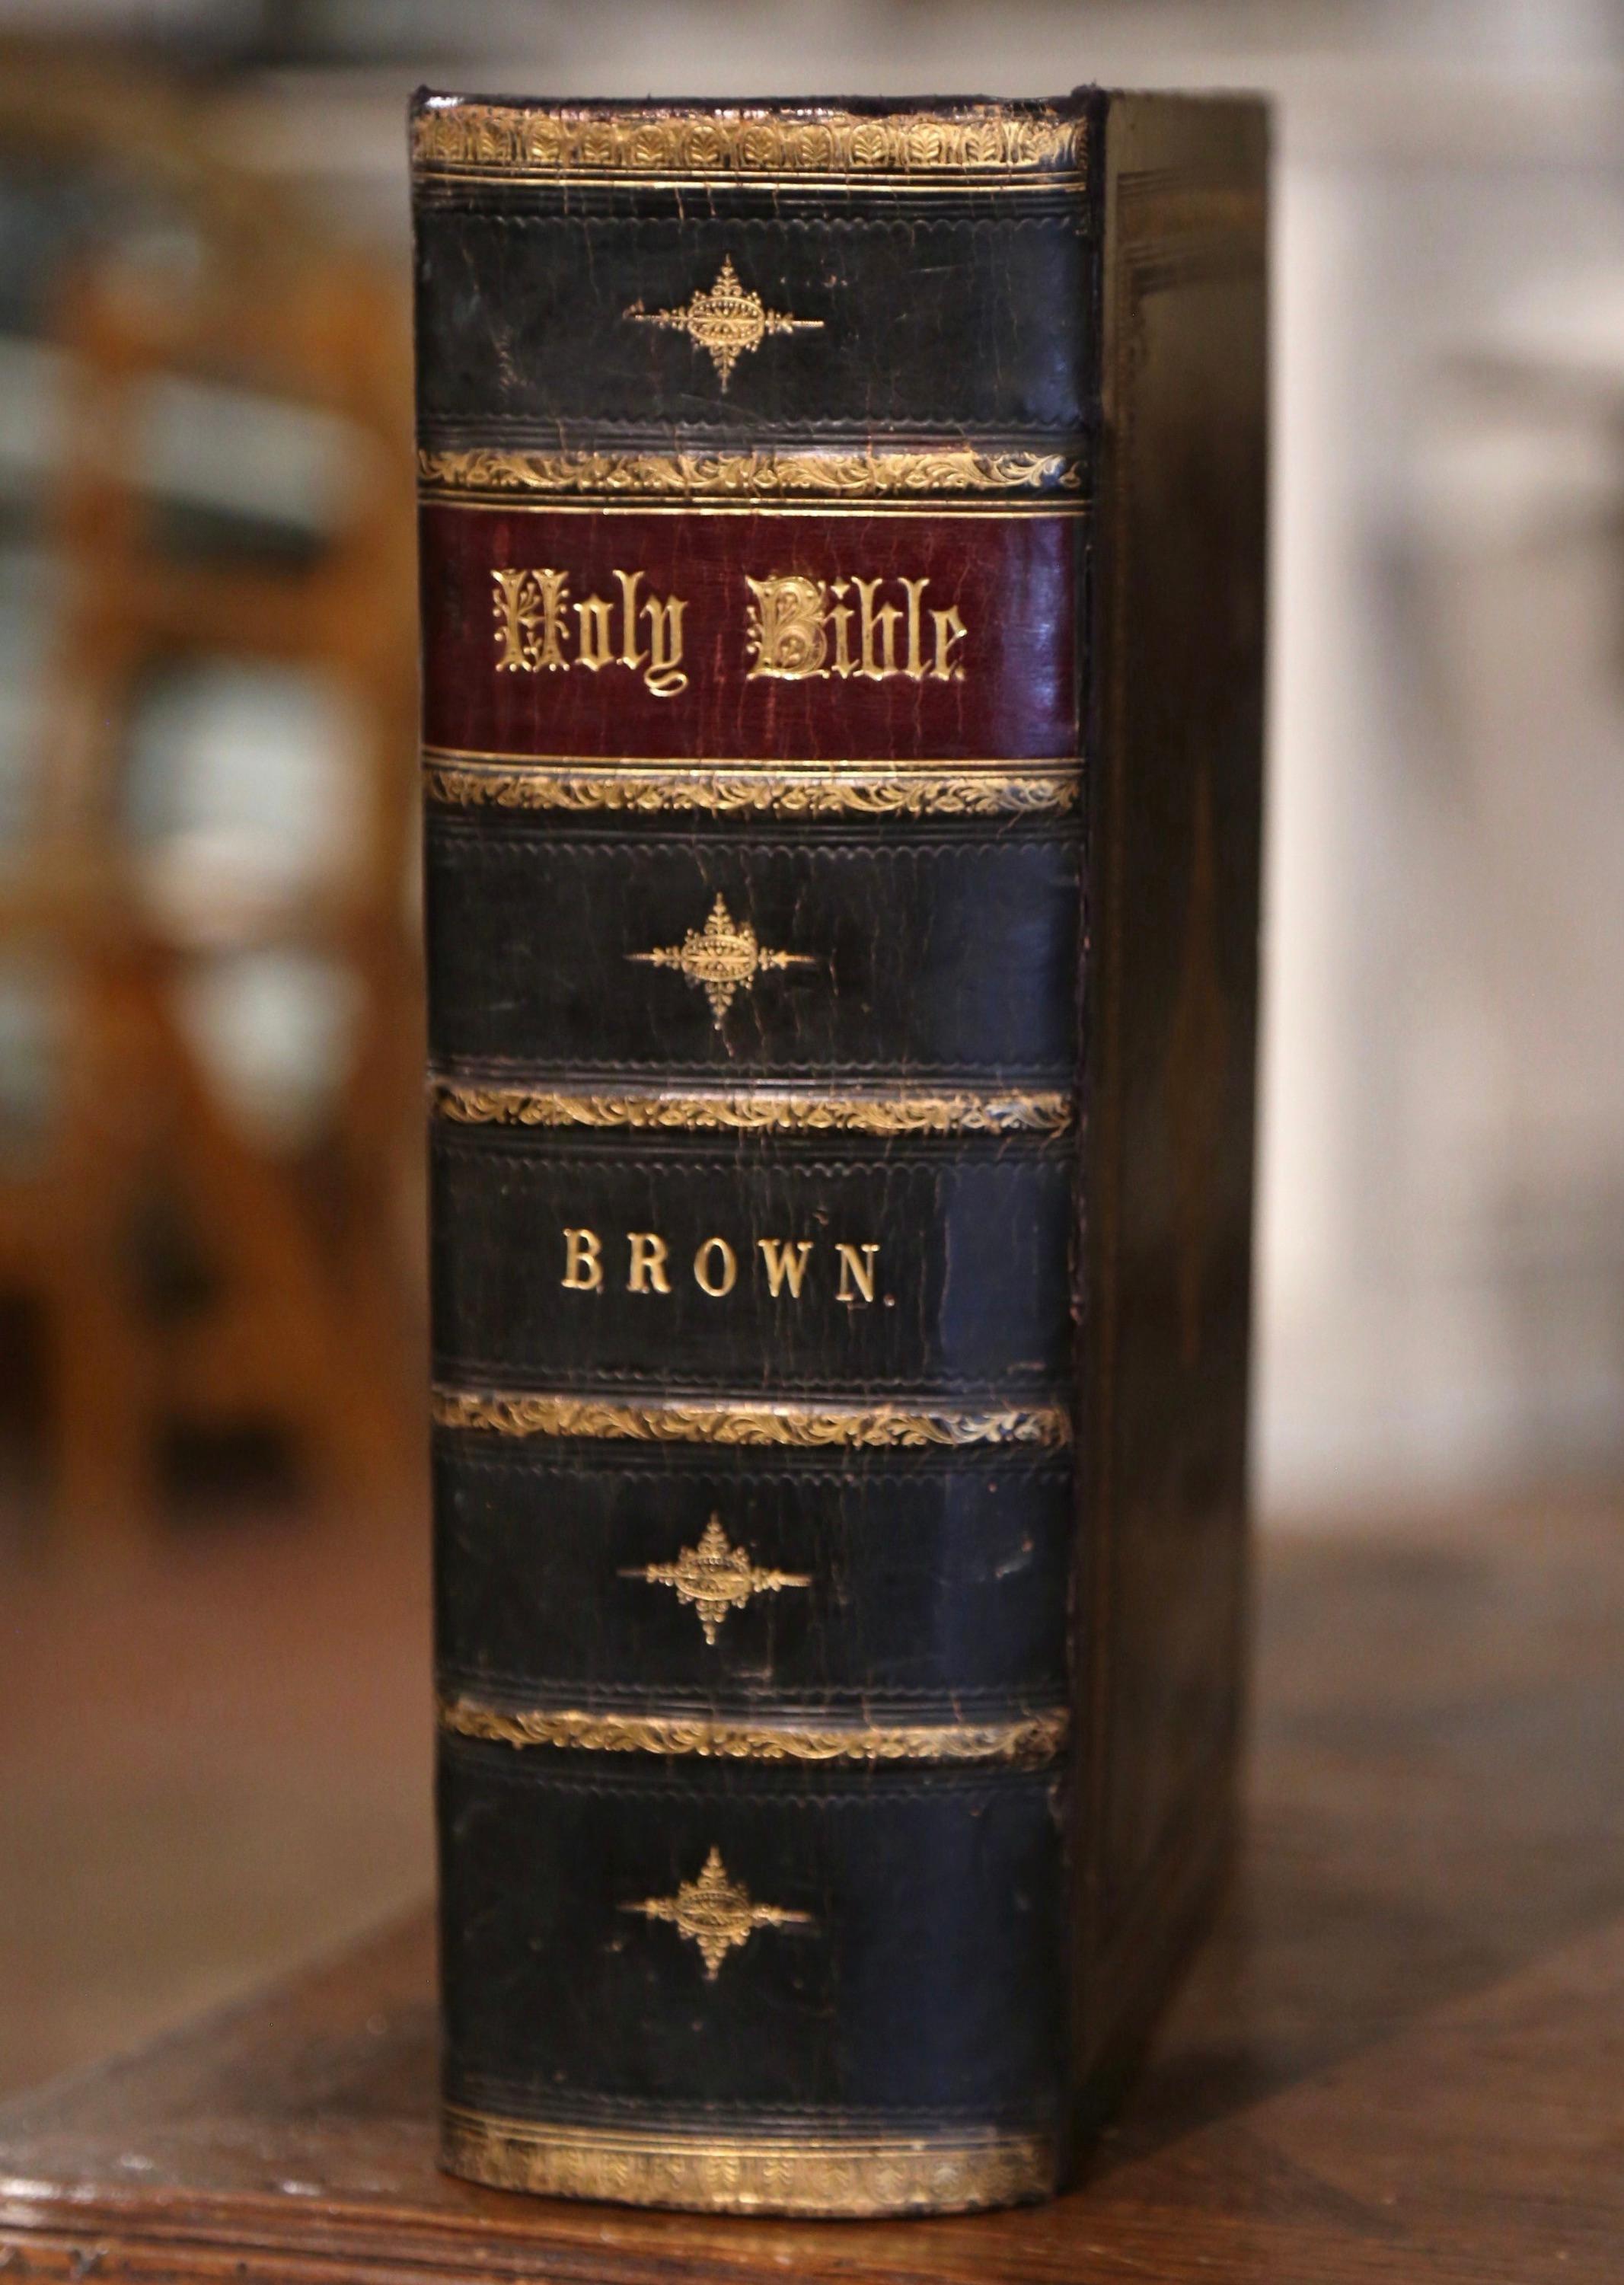 Diese schöne antike Bibel wurde im Vereinigten Königreich von Blackie and Son aus dem Jahr 1864 gedruckt. Die in schwarzes Leder gebundene Bibel hat einen gravierten und geprägten Goldeinband mit einem Medaillon in der Mitte, und auf dem Buchrücken